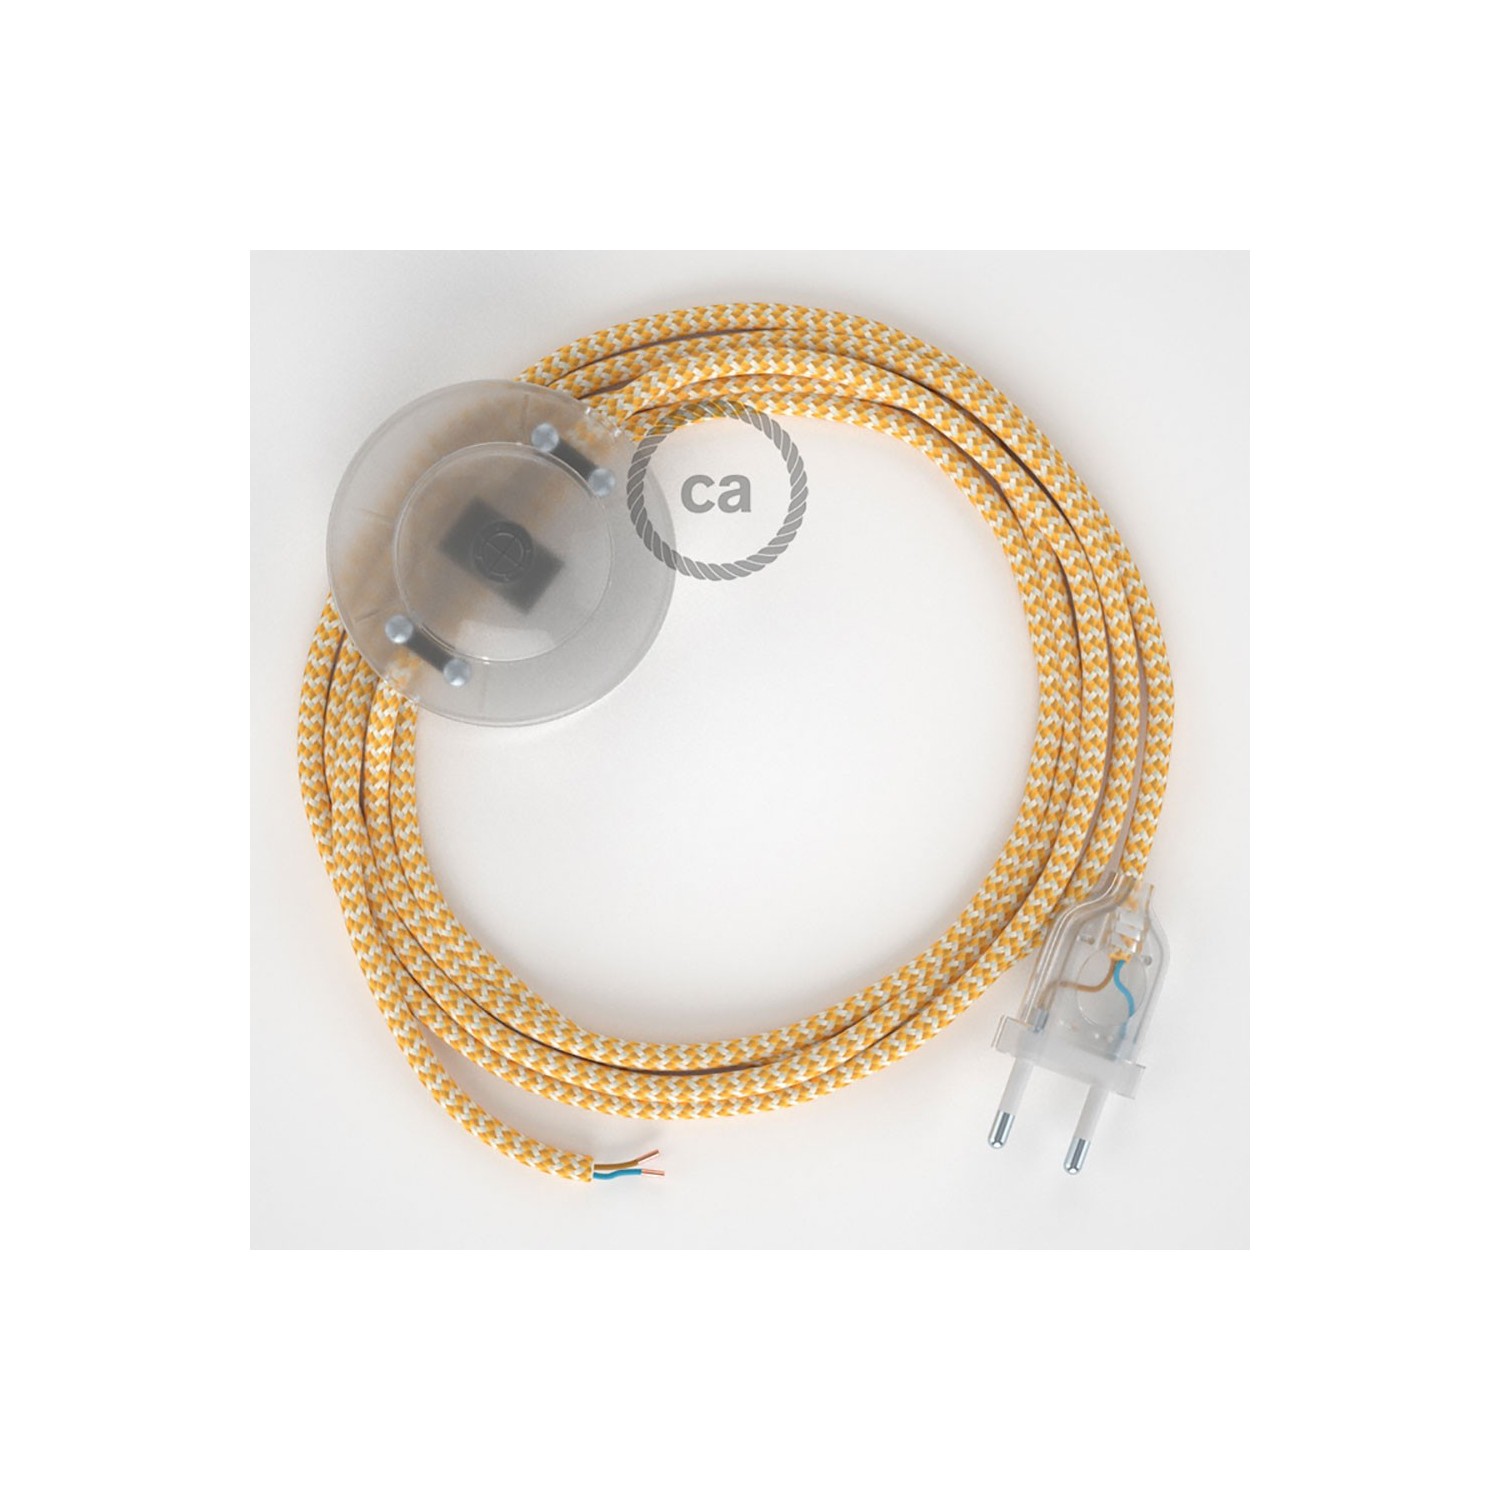 Stehleuchte Anschlussleitung RZ10 Zick-Zack Weiß Gelb Seideneffekt 3 m. Wählen Sie aus drei Farben bei Schalter und Stecke.